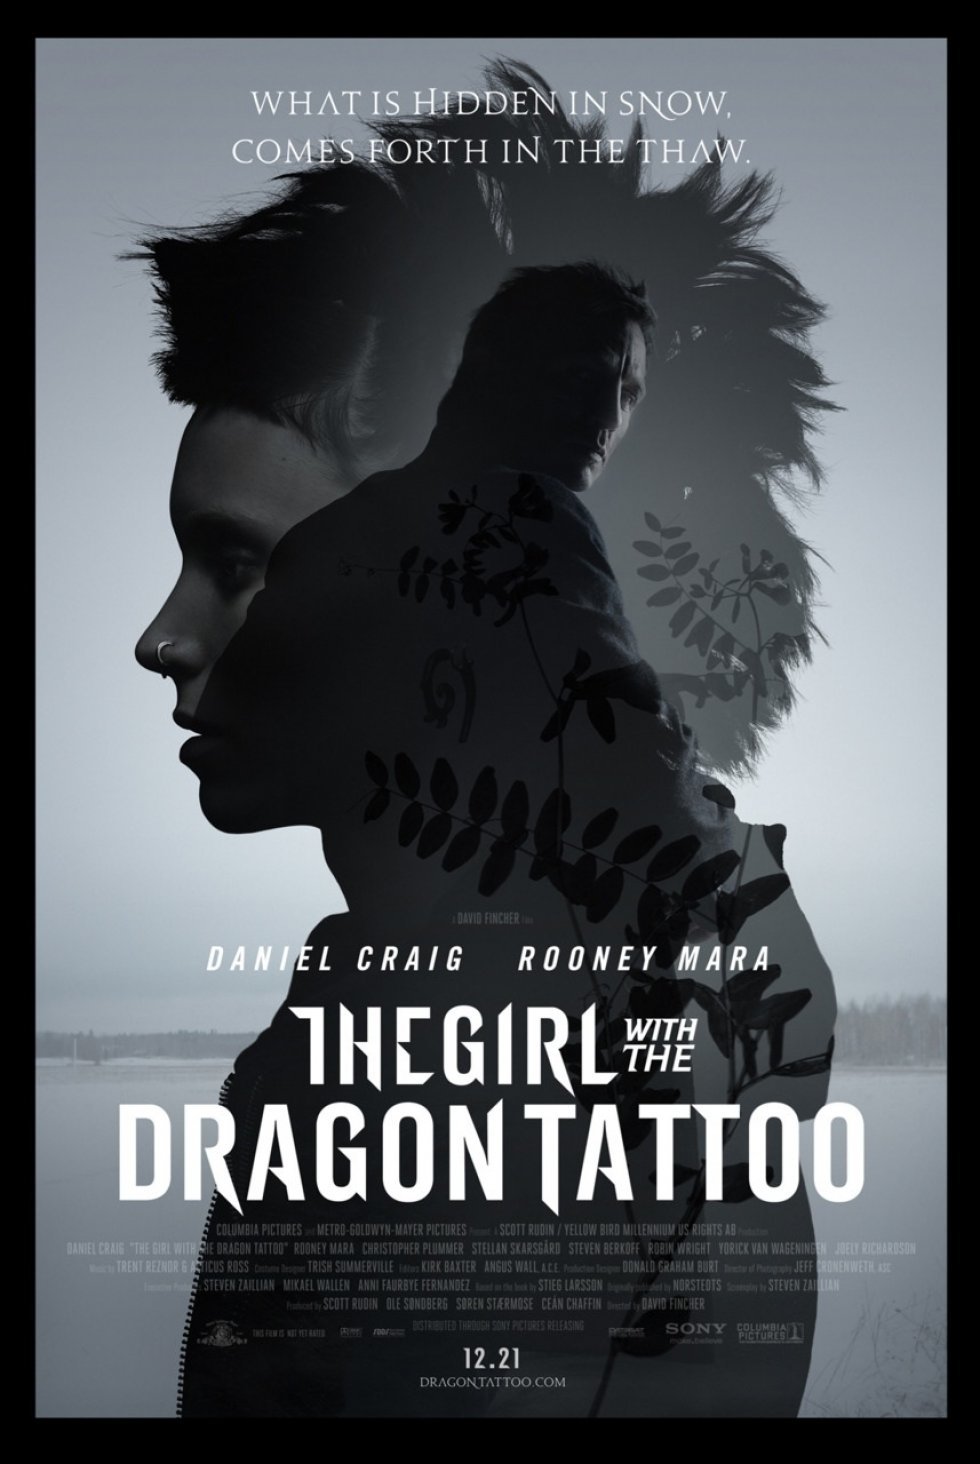 Walt Disney Studios Motion Pictures/Sony Pictures - The Girl with the Dragon Tattoo - Mænd der hader kvinder, på amerikansk